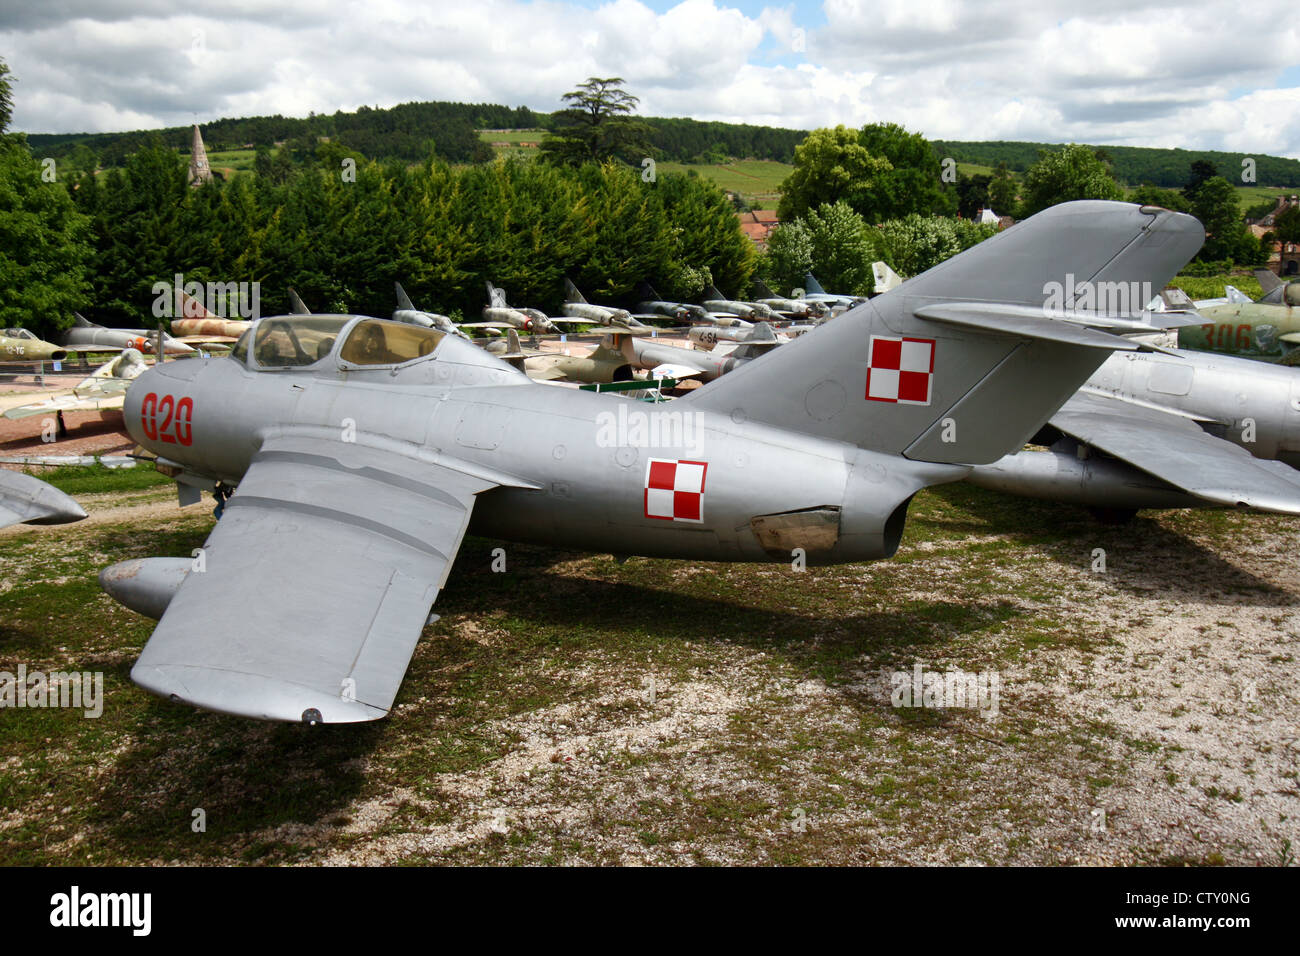 Polish Air Force MiG-15 à l'affiche au Musée de l'aviation au château de Savigny-les-Beaune, France Banque D'Images